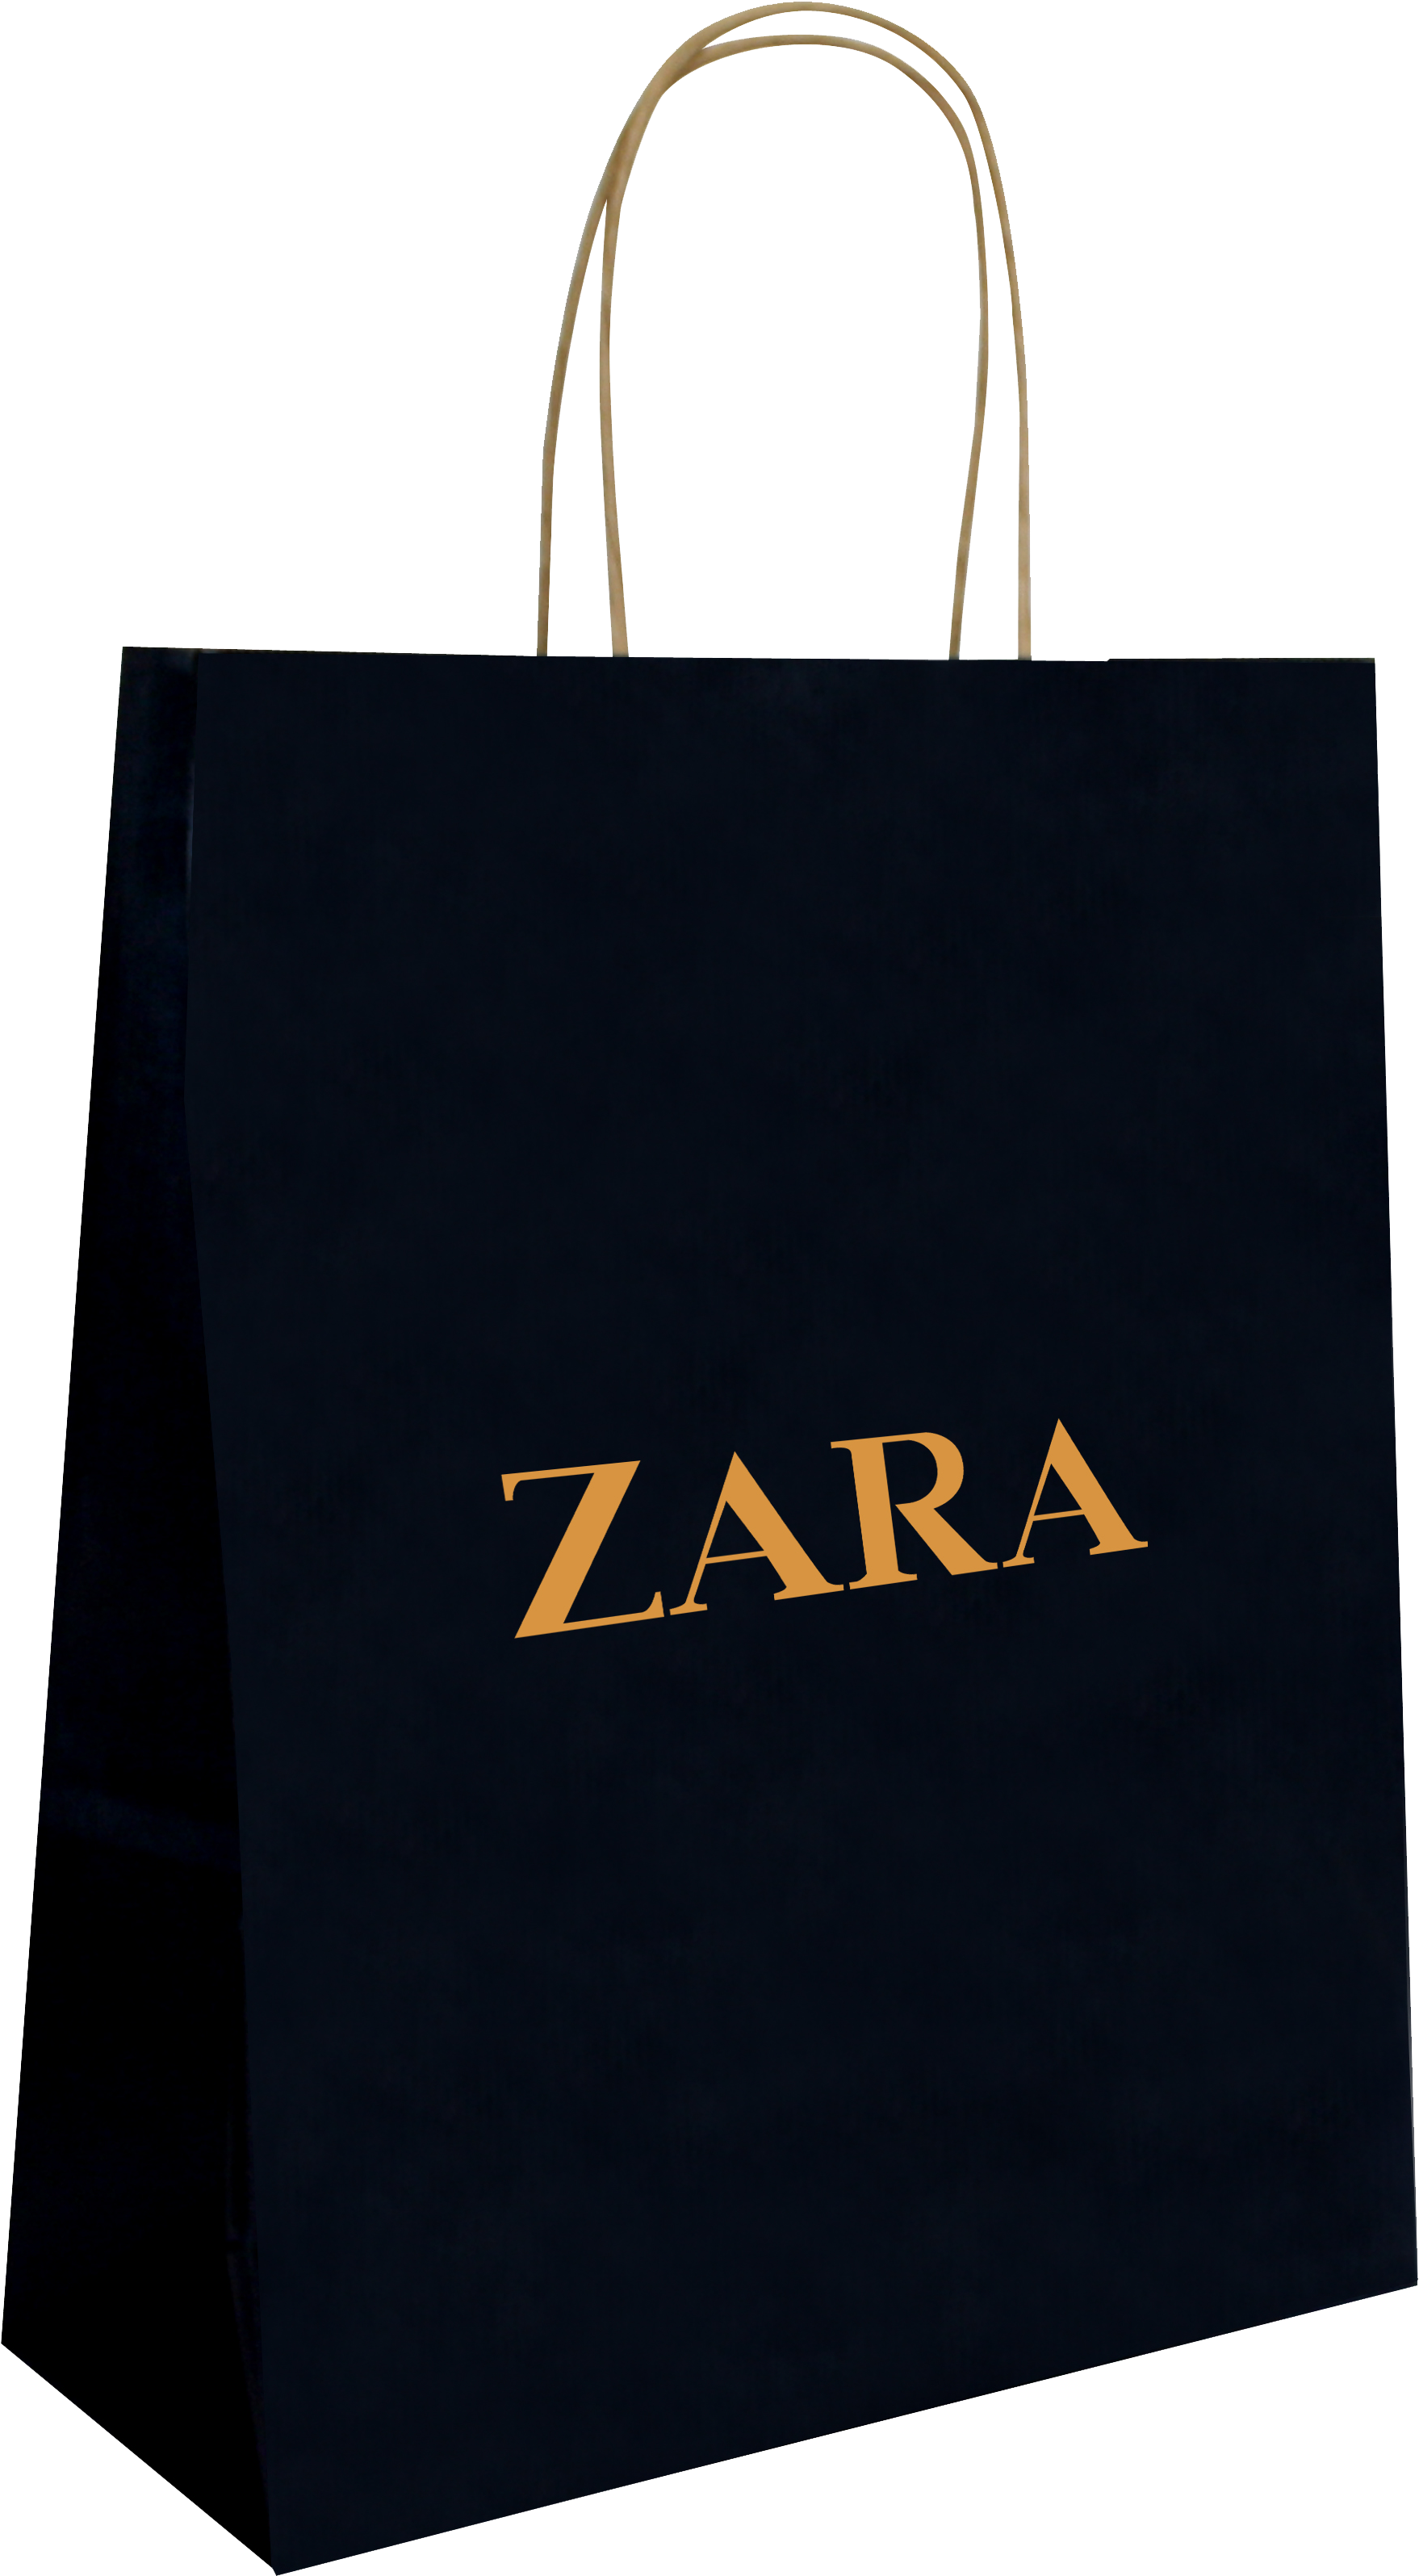 Zara PNG Image